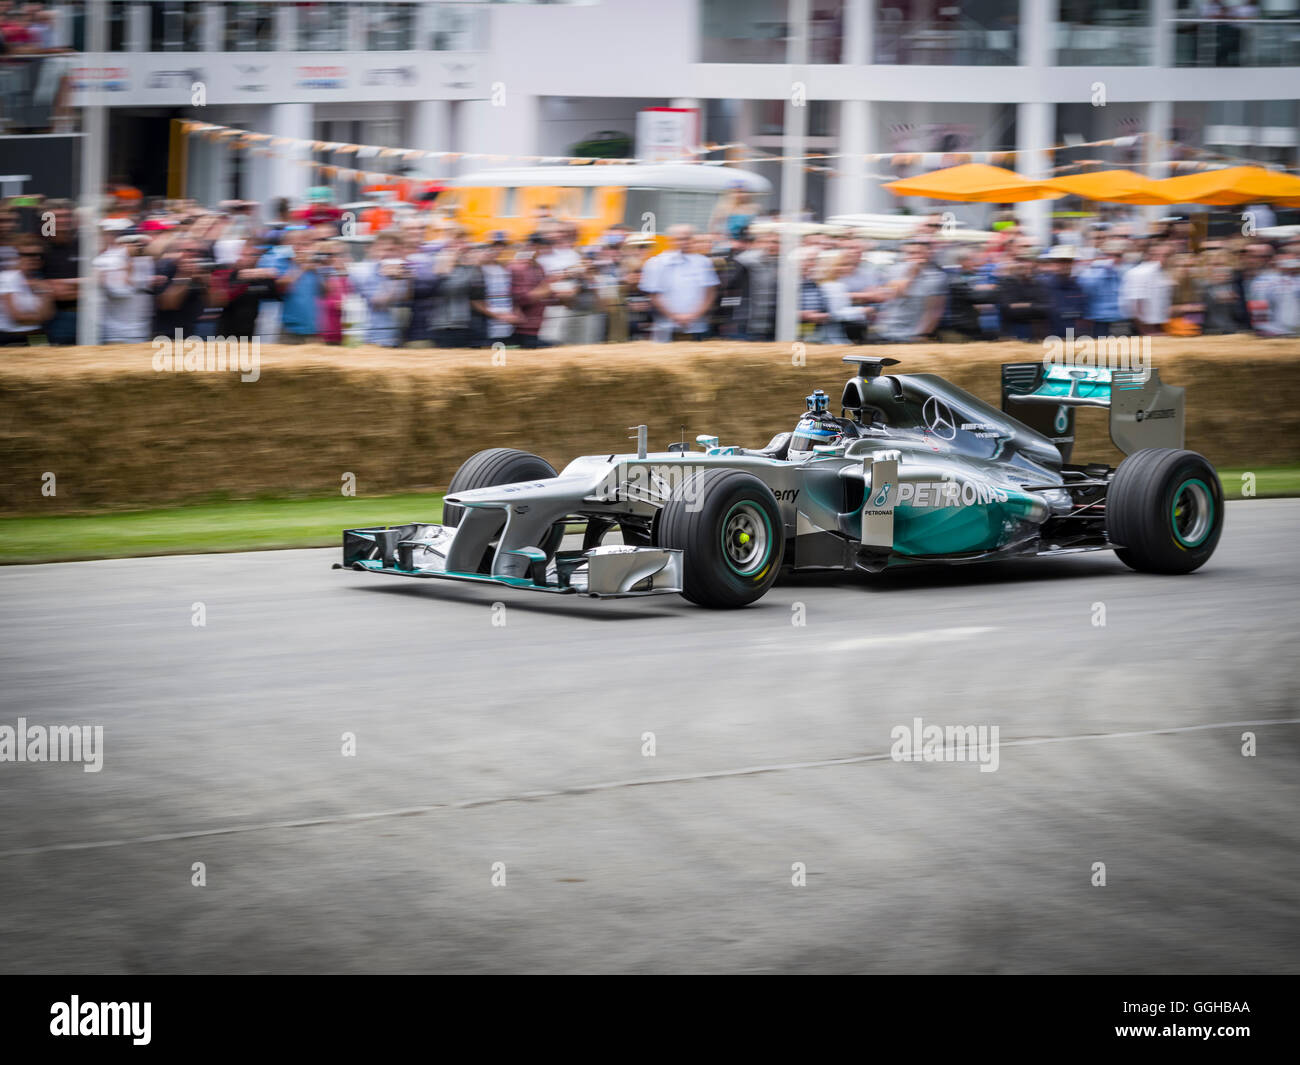 2011 Mercedes MGP W02 Formula 1 racing car, pilota Anthony Davidson, Goodwood Festival della velocità 2014, racing, auto racing, classi Foto Stock